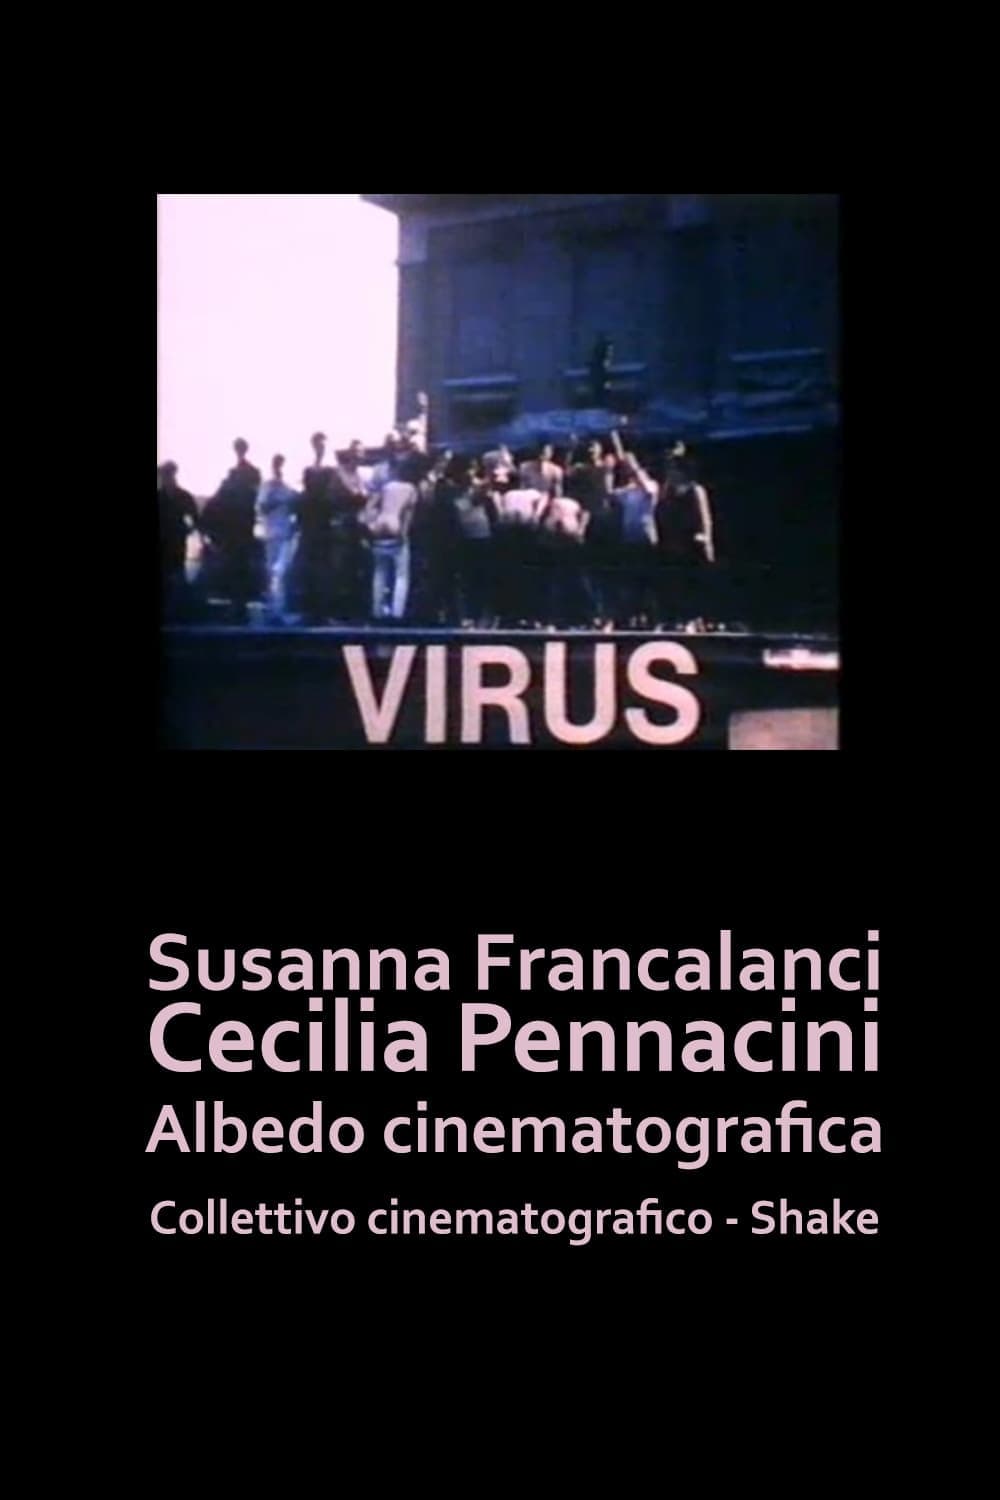 Virus - Il film